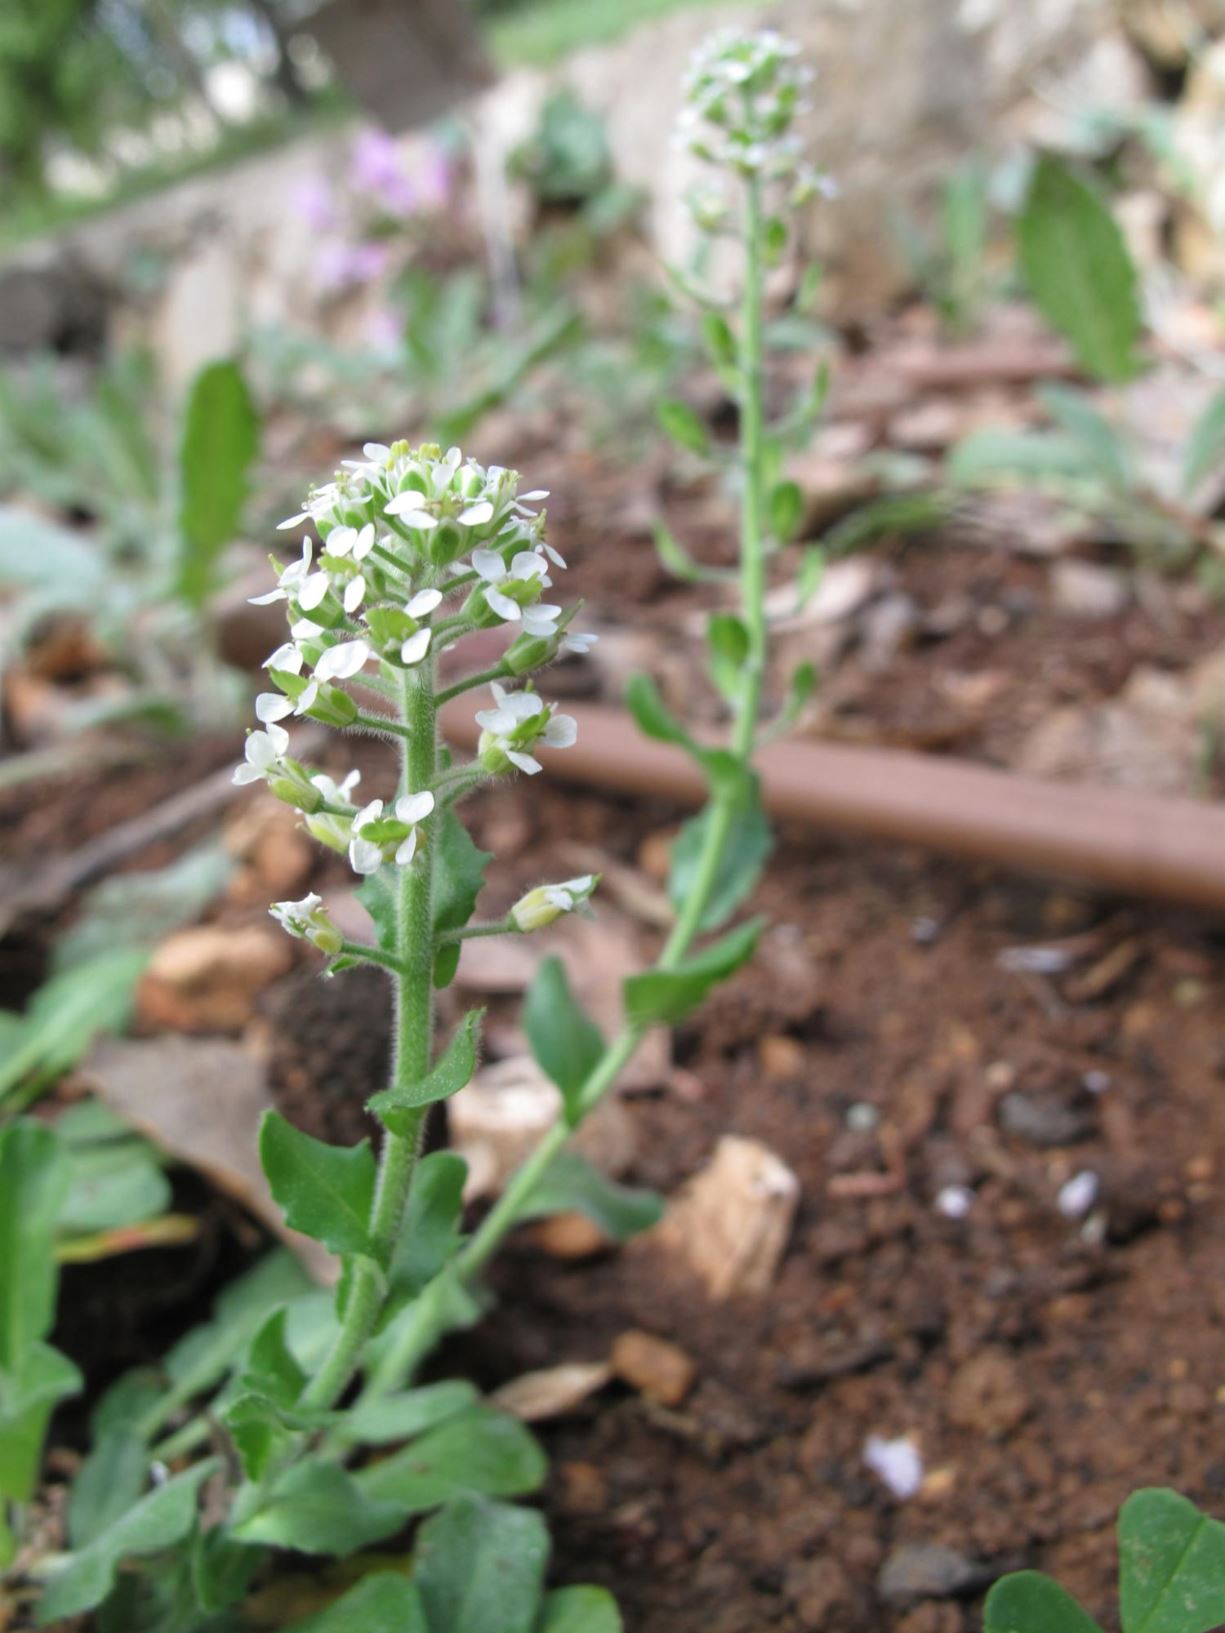 Lepidium hirtum - Mediterranean Pepperweed, Shaggy pepperwort, שחליים שעירים, שחליים שעירים